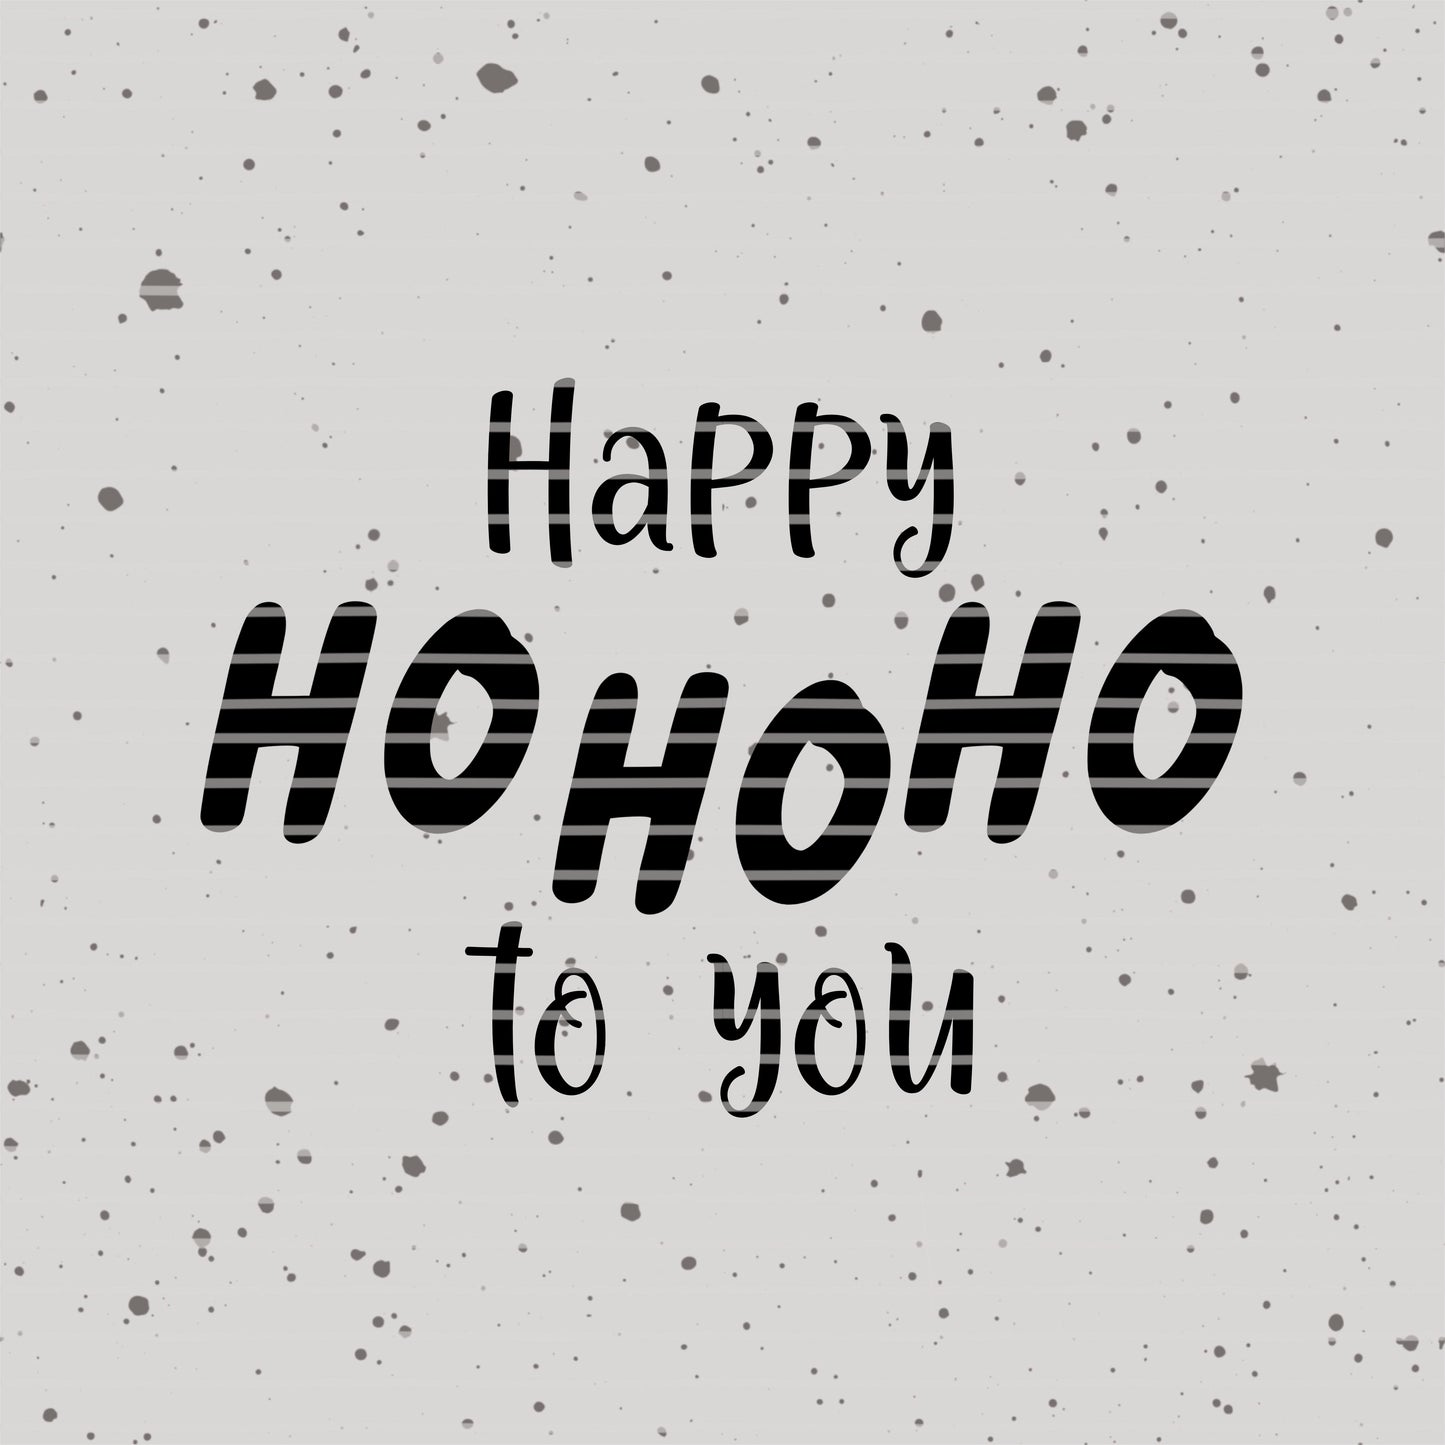 Happy hohoho